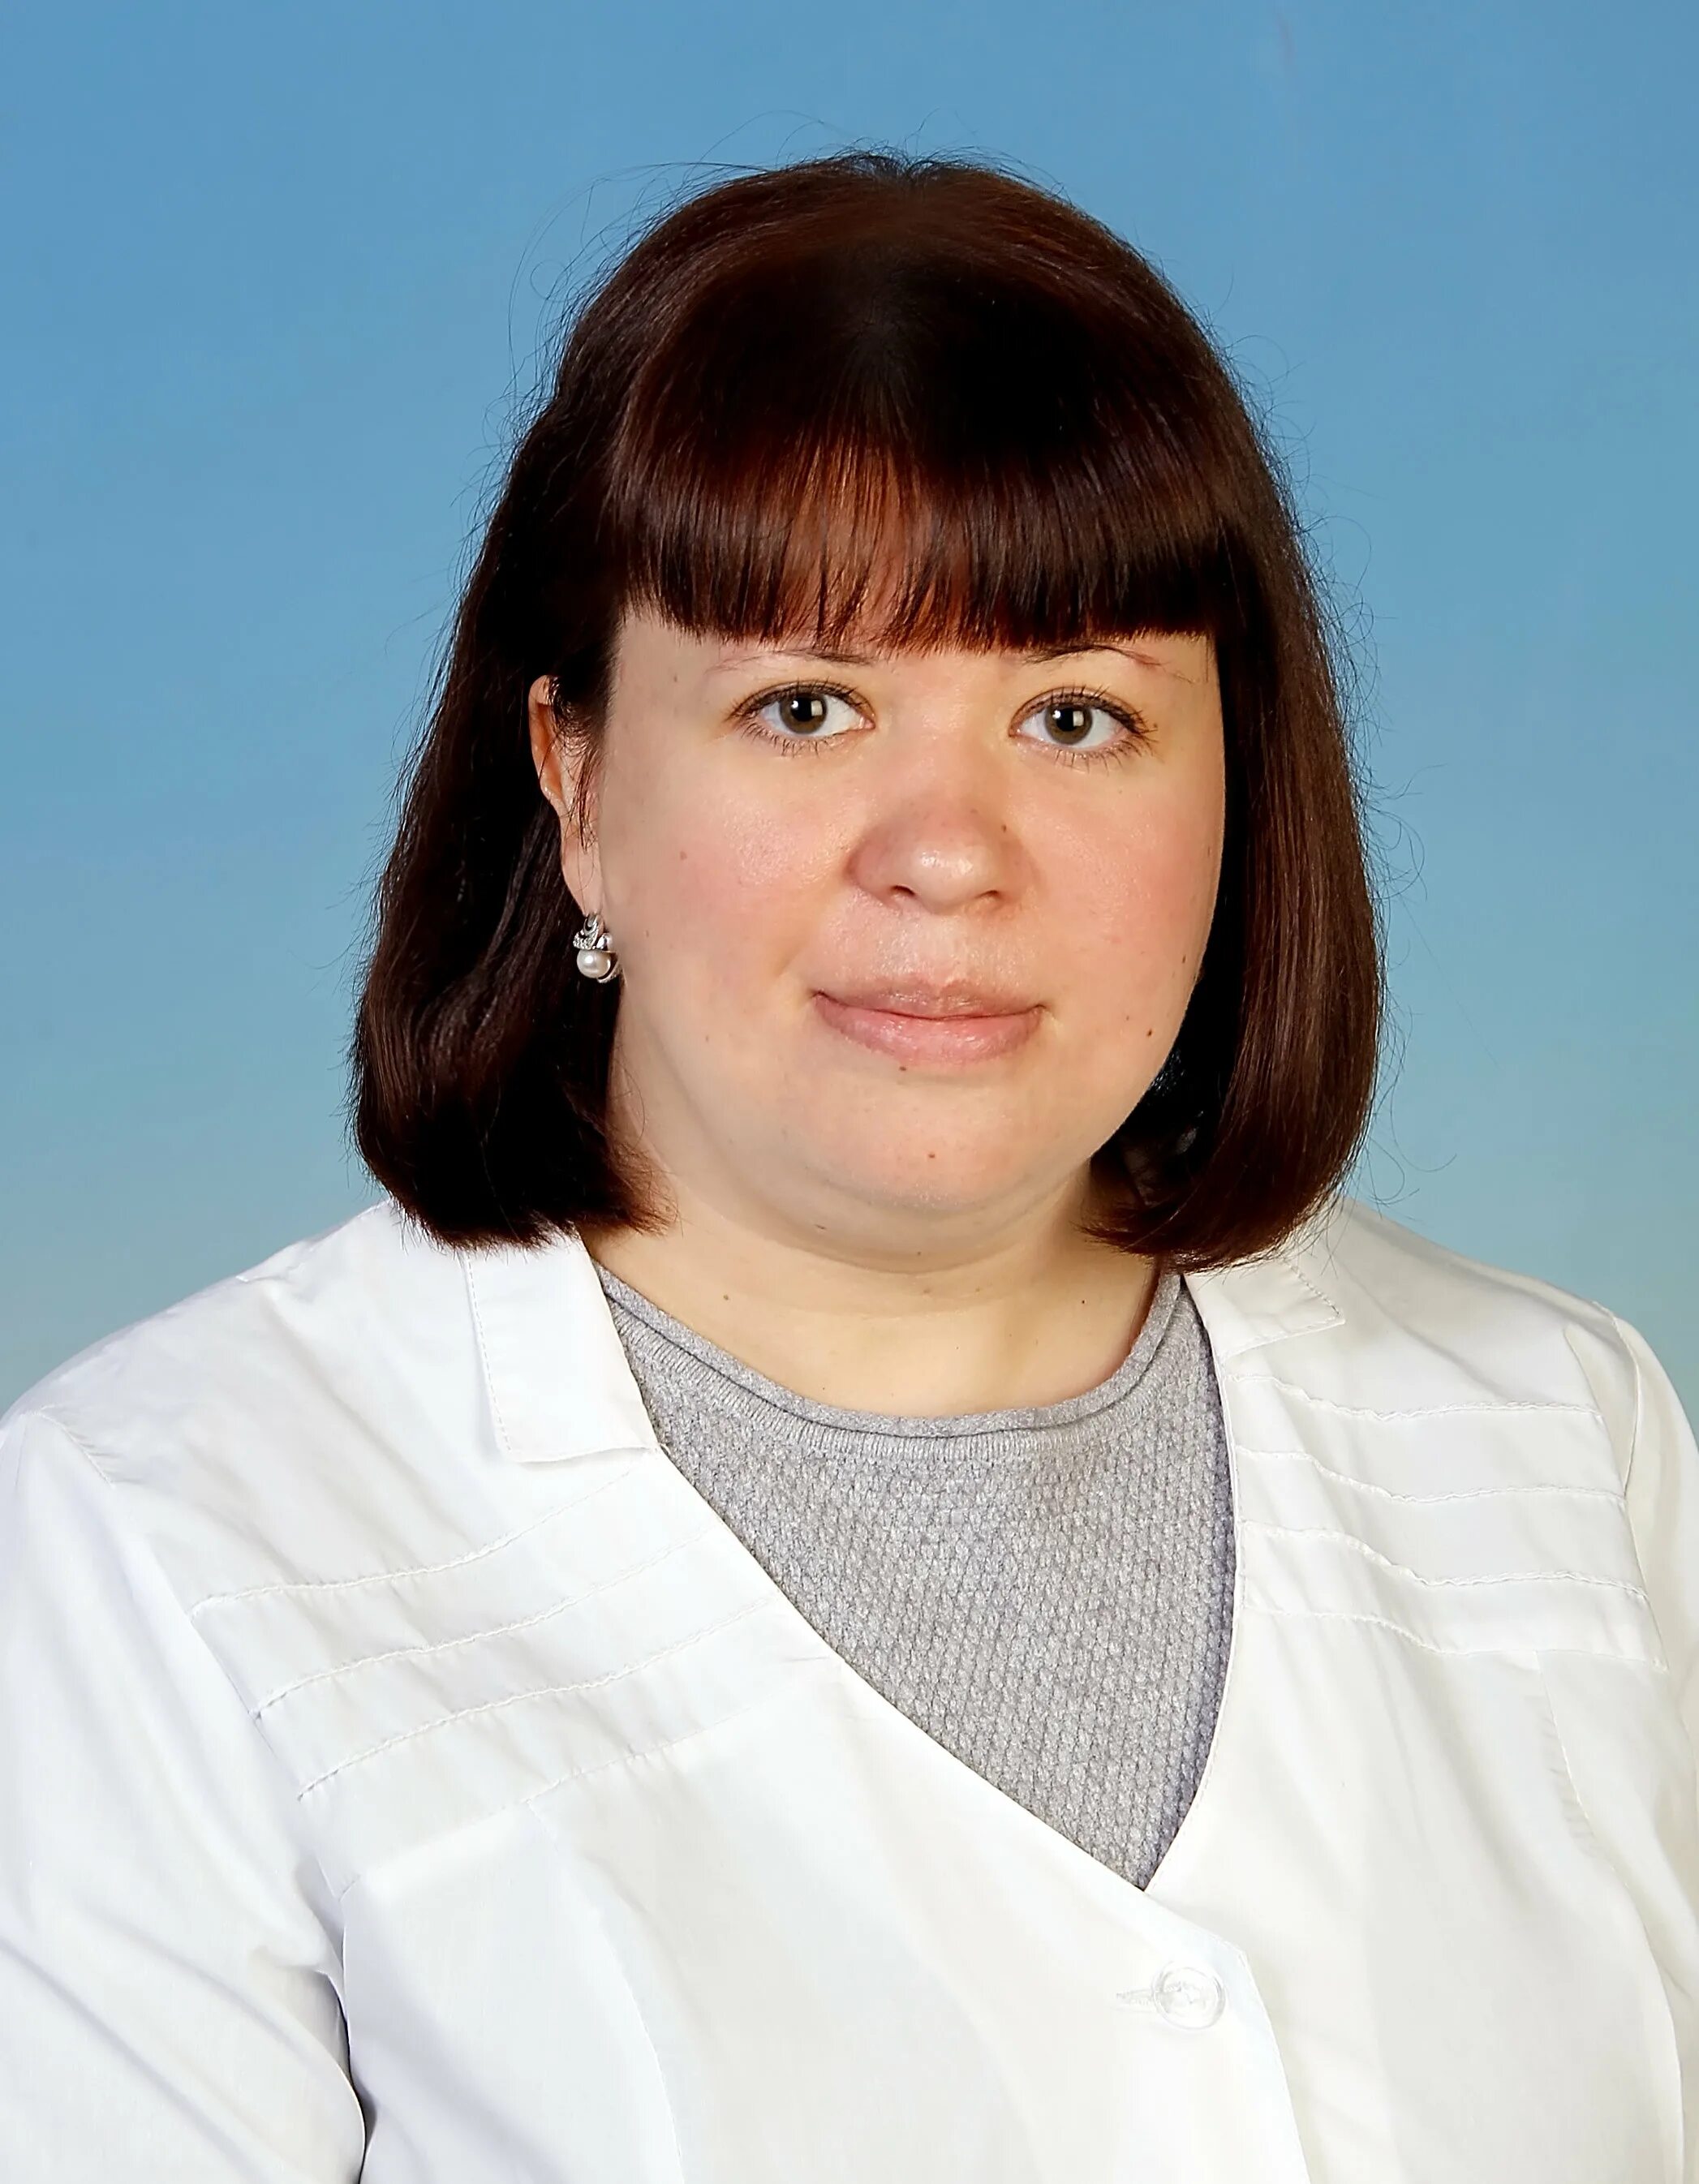 Невропатолог тула. Л-мед Тула врач Капралова.